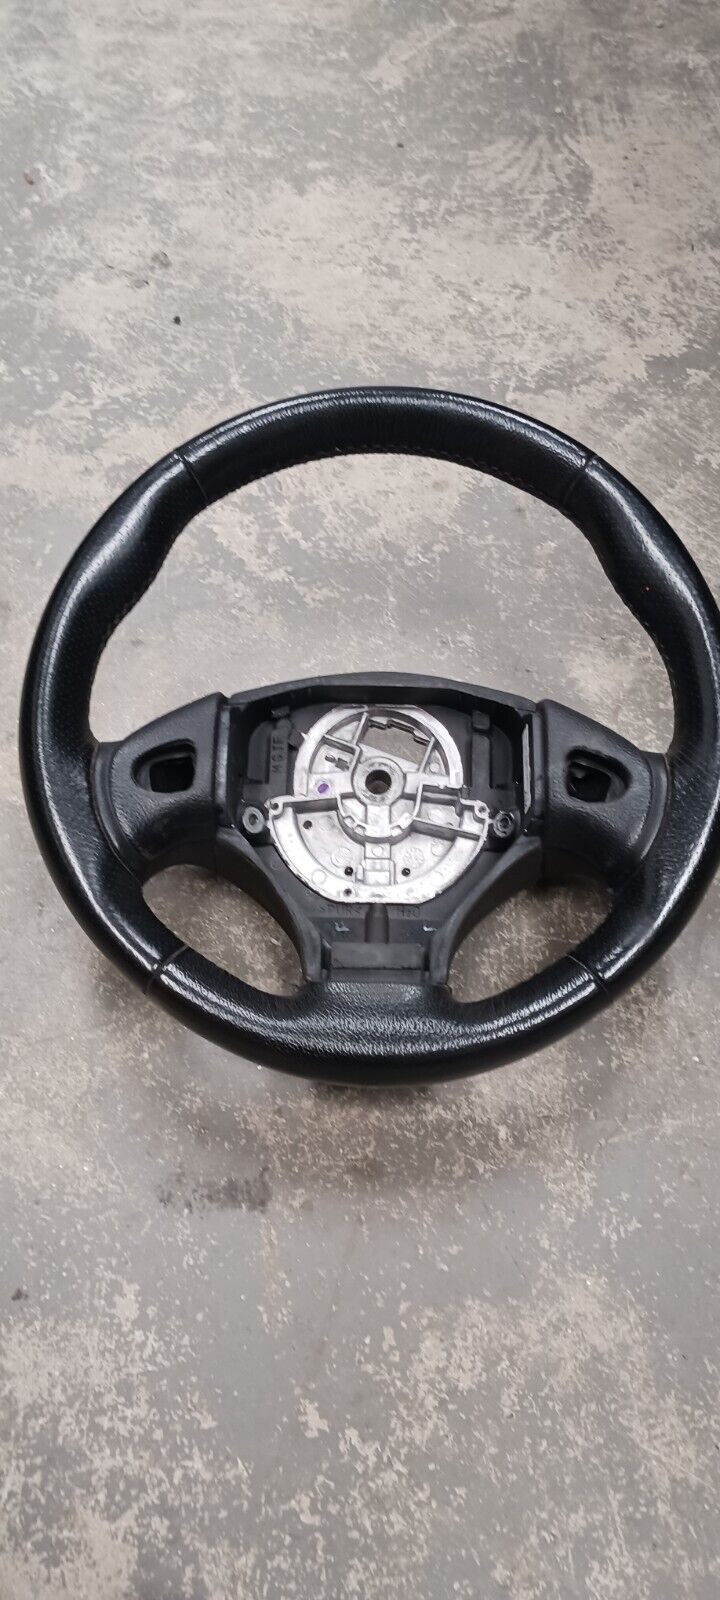 Mgtf   Mgf  Leather Steering Wheel 68000 Miles